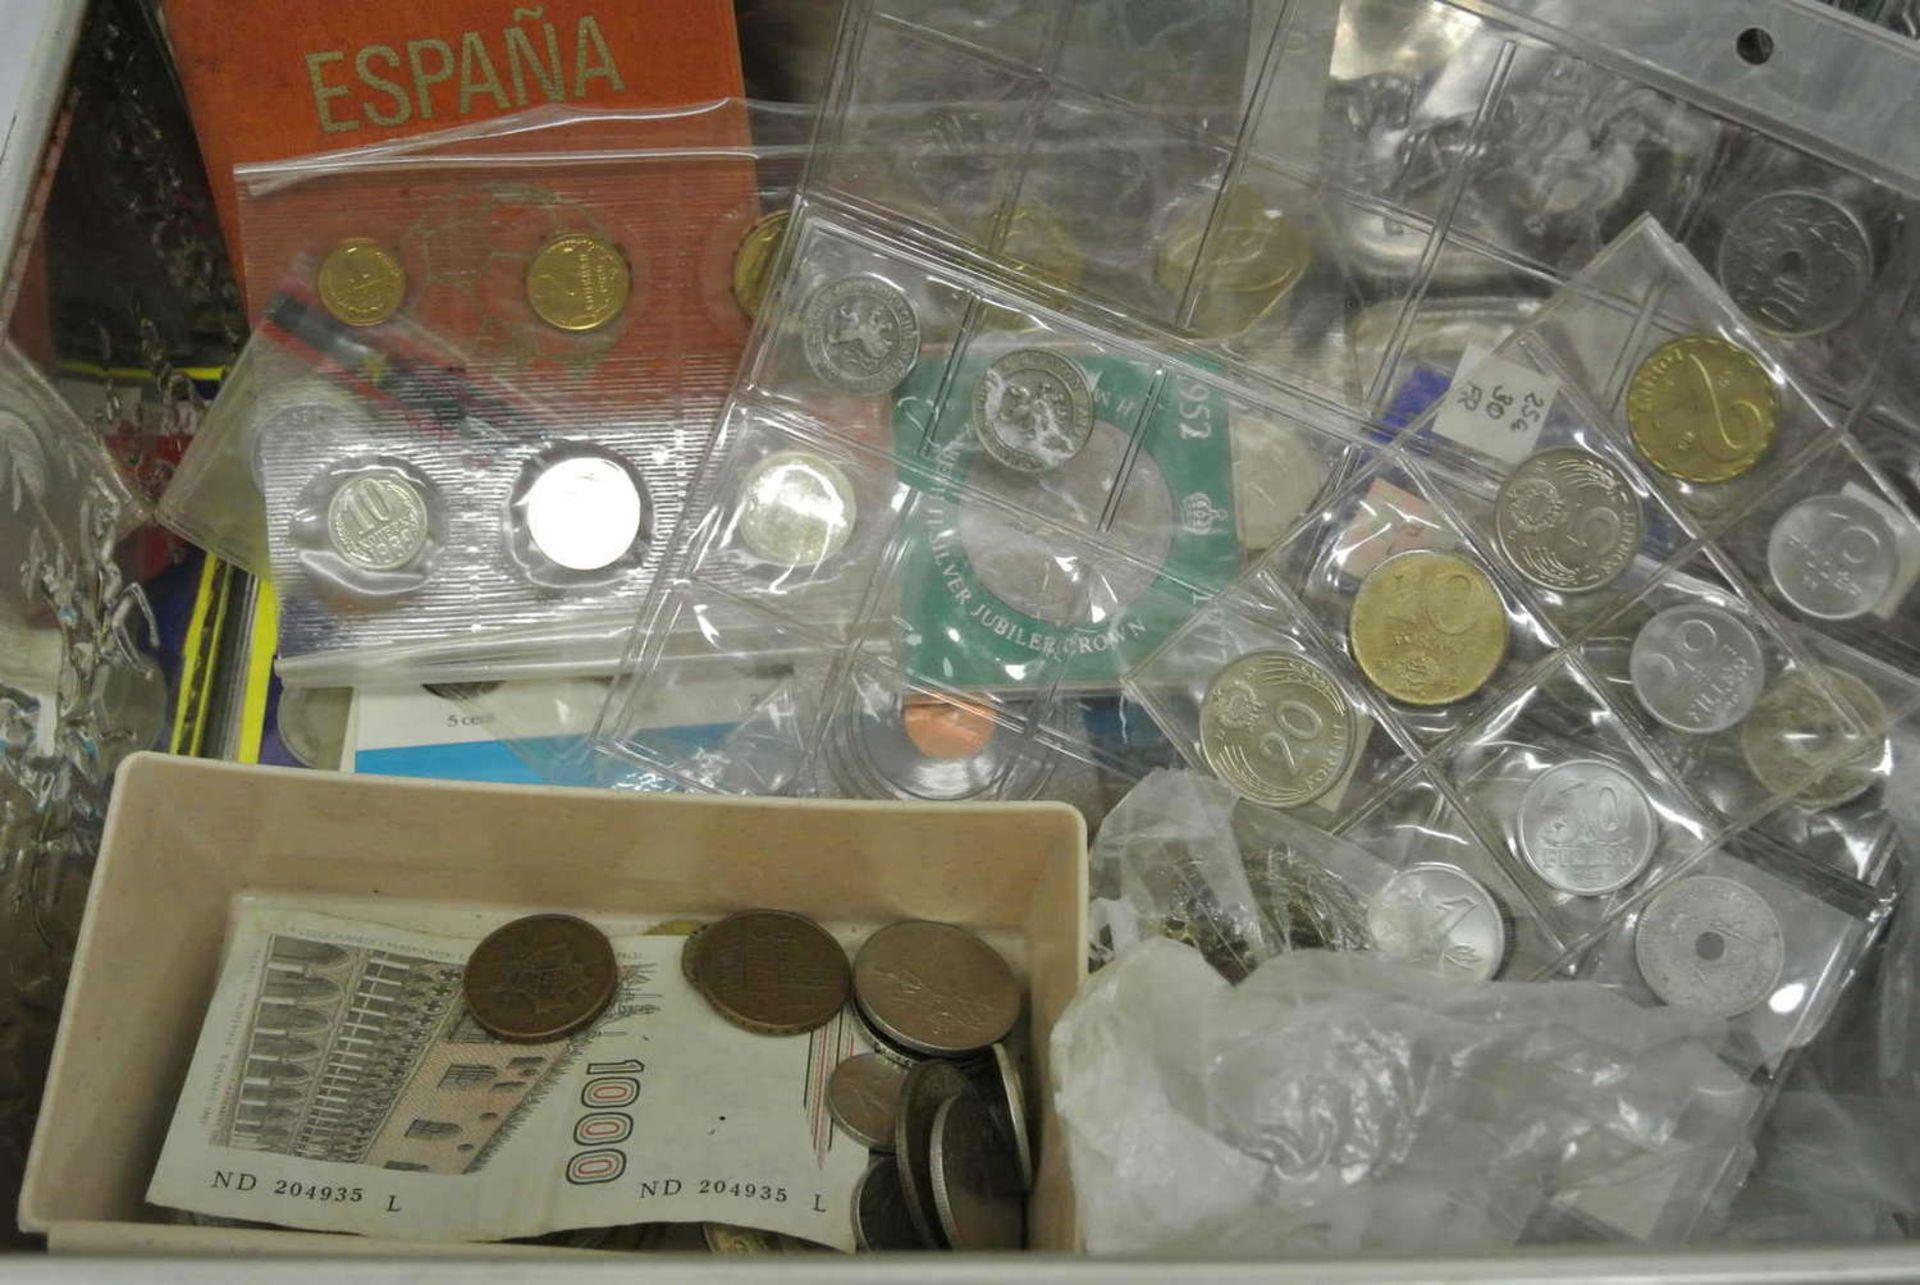 1 Blechdose mit Münzfundus, dabei z.Bsp. 1 Kursmünzsatz 1989 Russland, Medaillen, viele Münzen